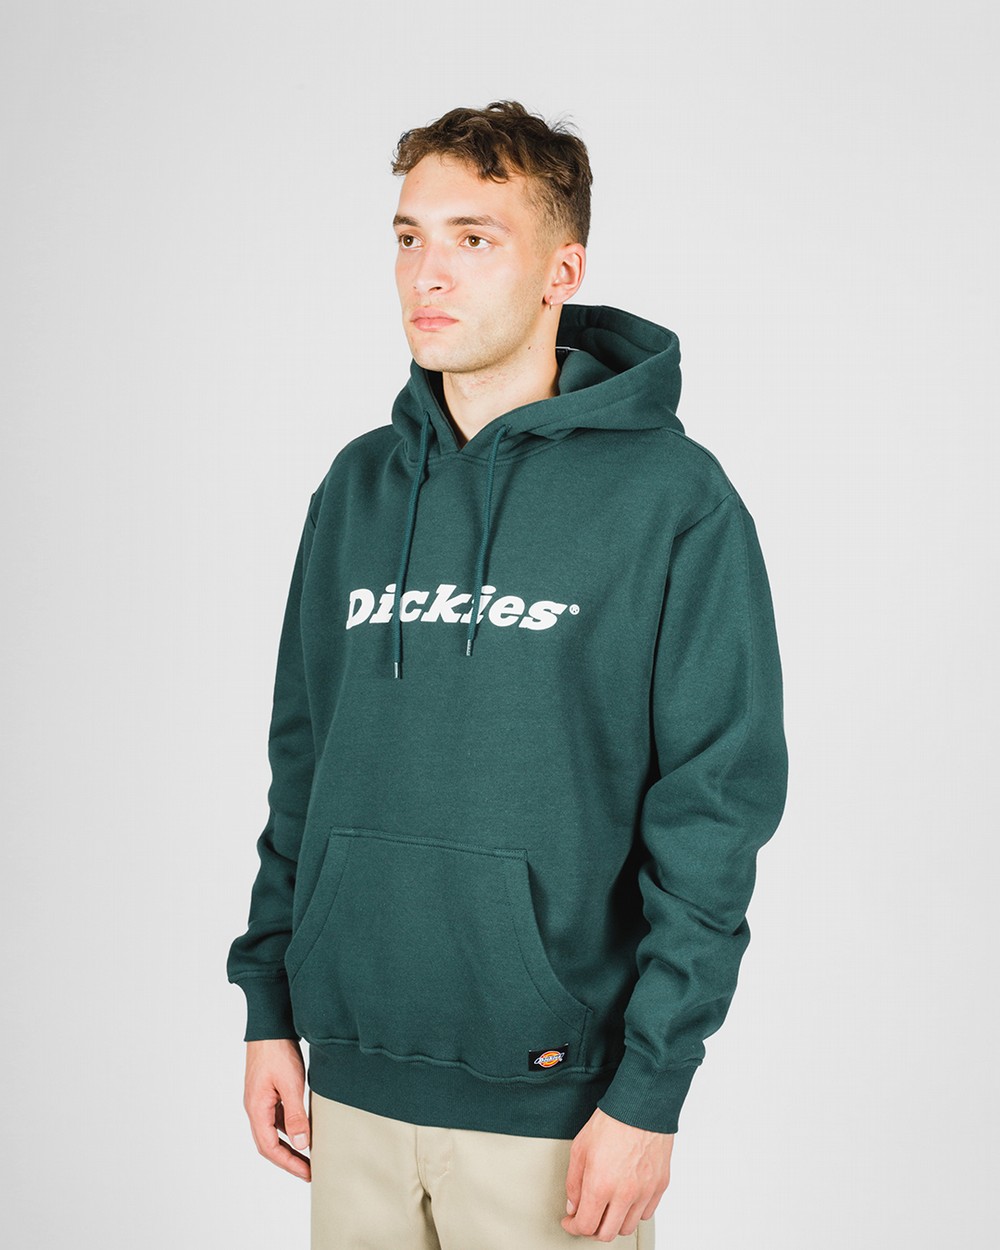 duckies hoodie